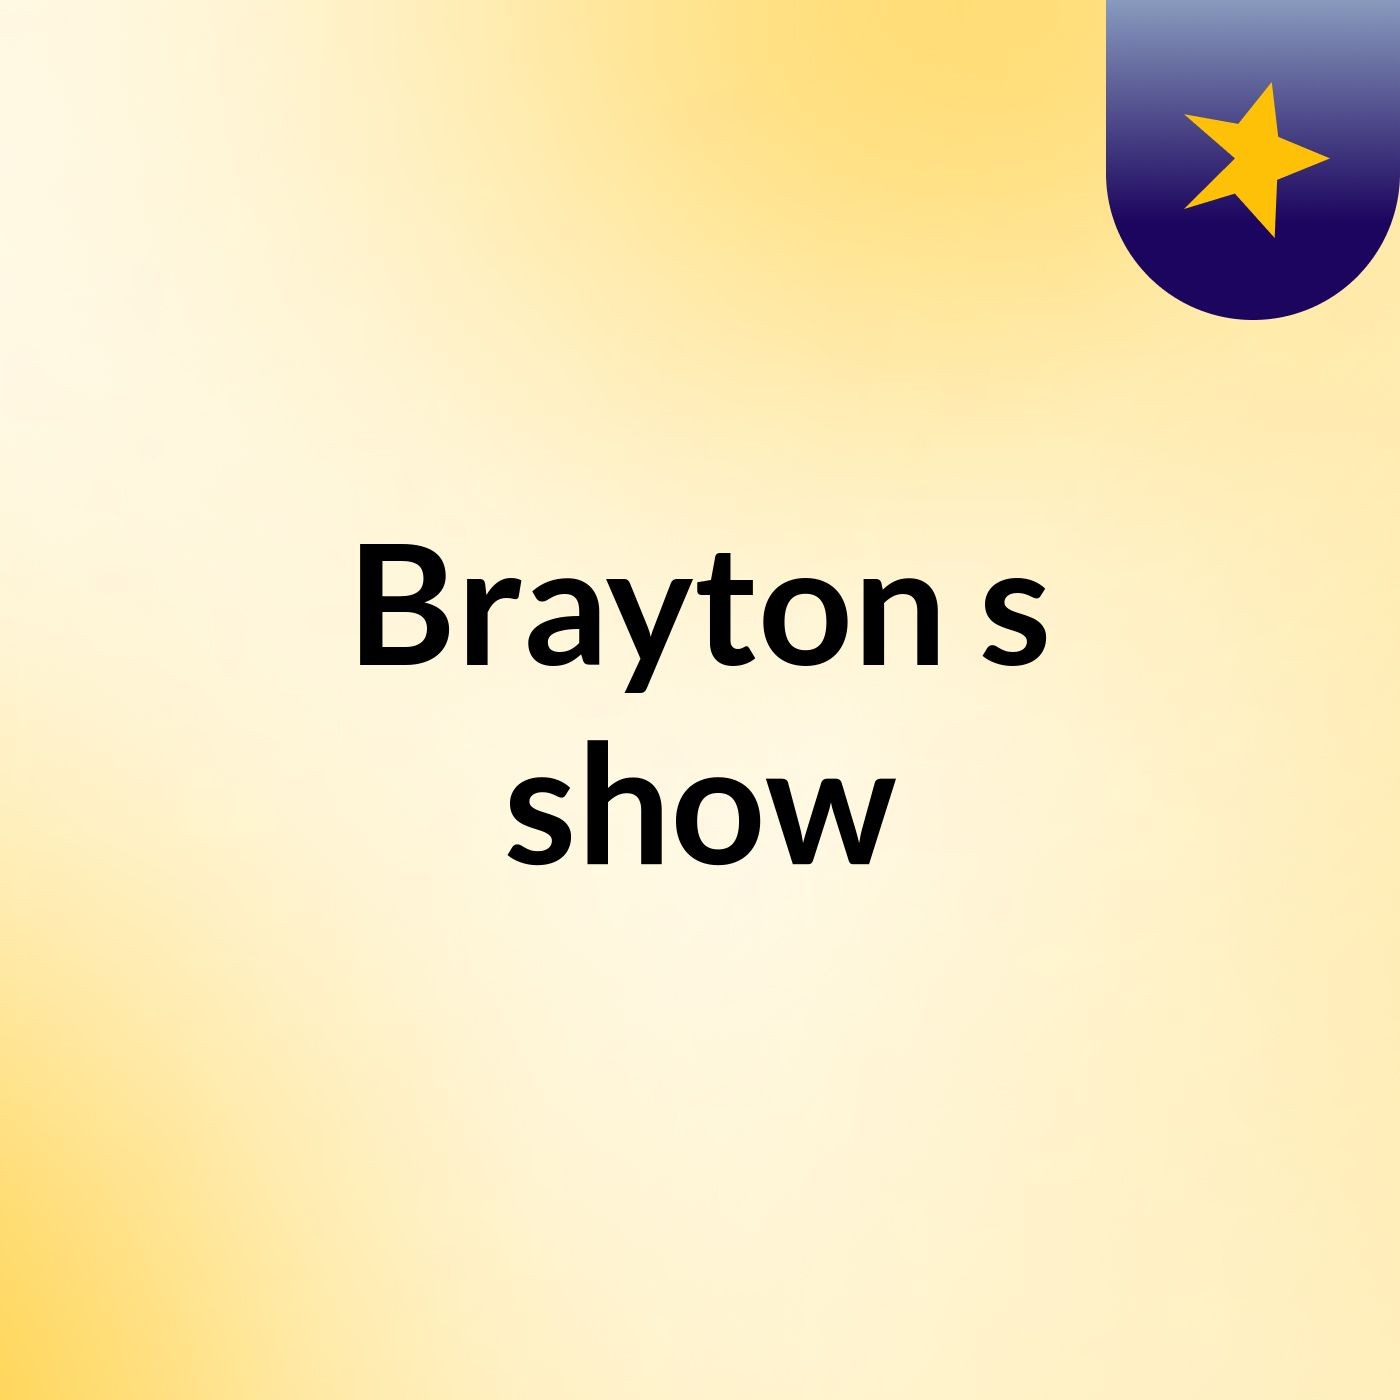 Brayton's show